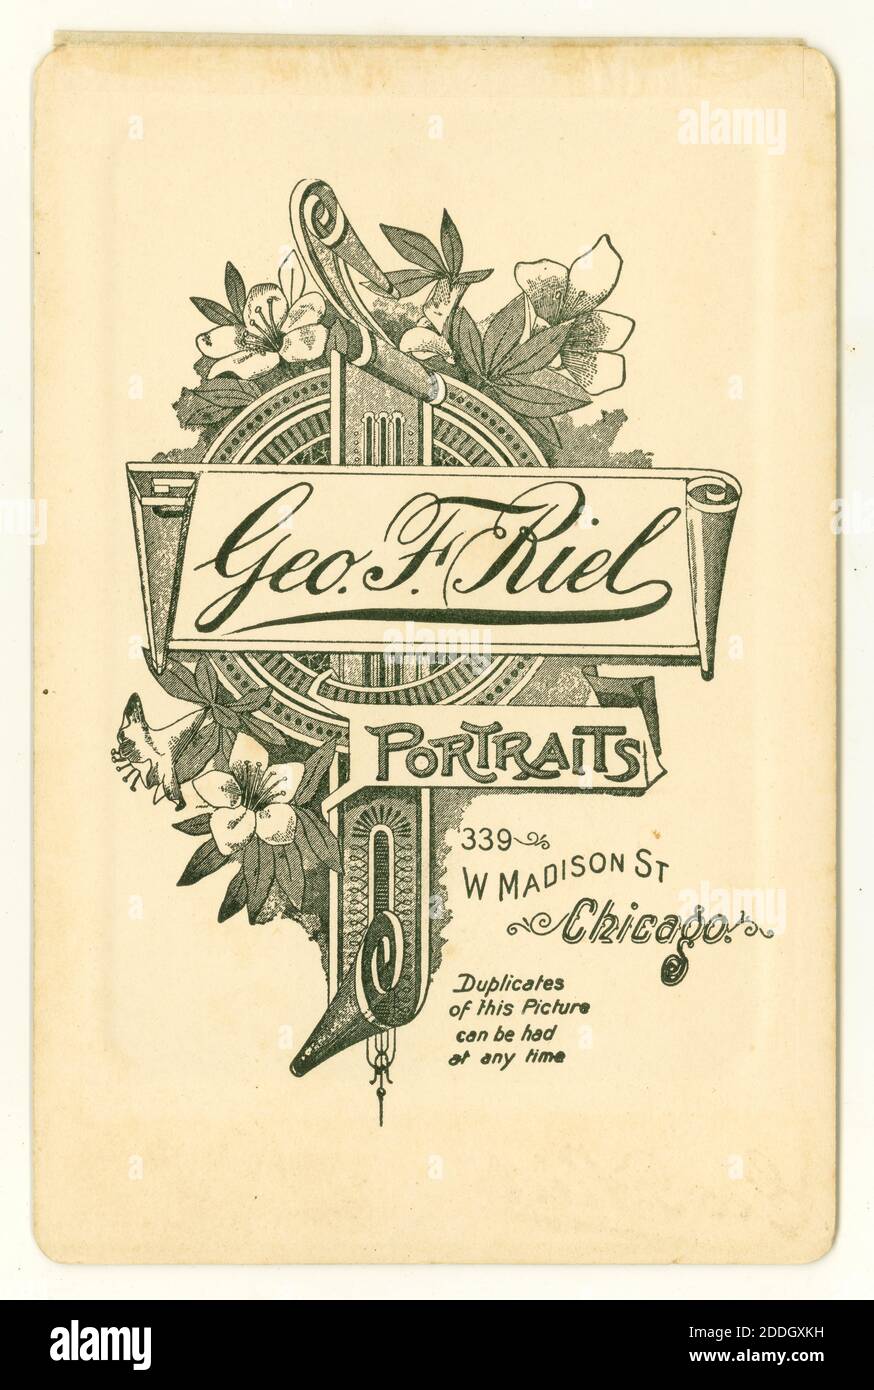 Inverse de la carte de l'armoire originale vers 1895, des studios photographiques de Geo,. F. Riel, W. Madison St. Chicago, États-Unis vers 1895 Banque D'Images